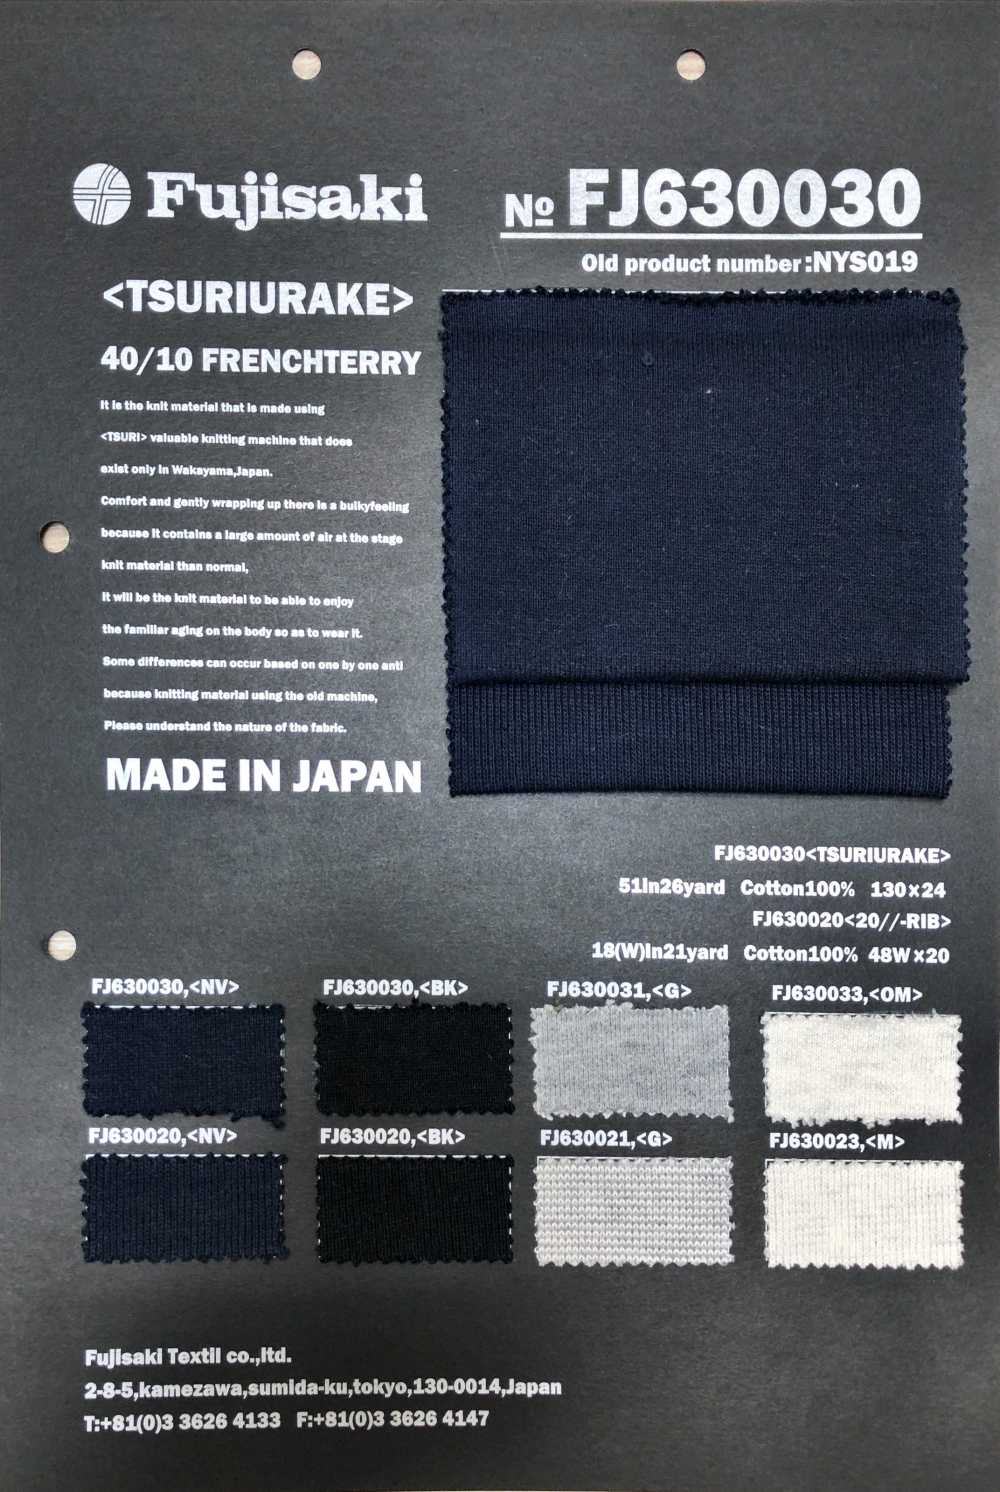 FJ630021 20//- Tejido Acanalado Jaspeado[Fabrica Textil] Fujisaki Textile